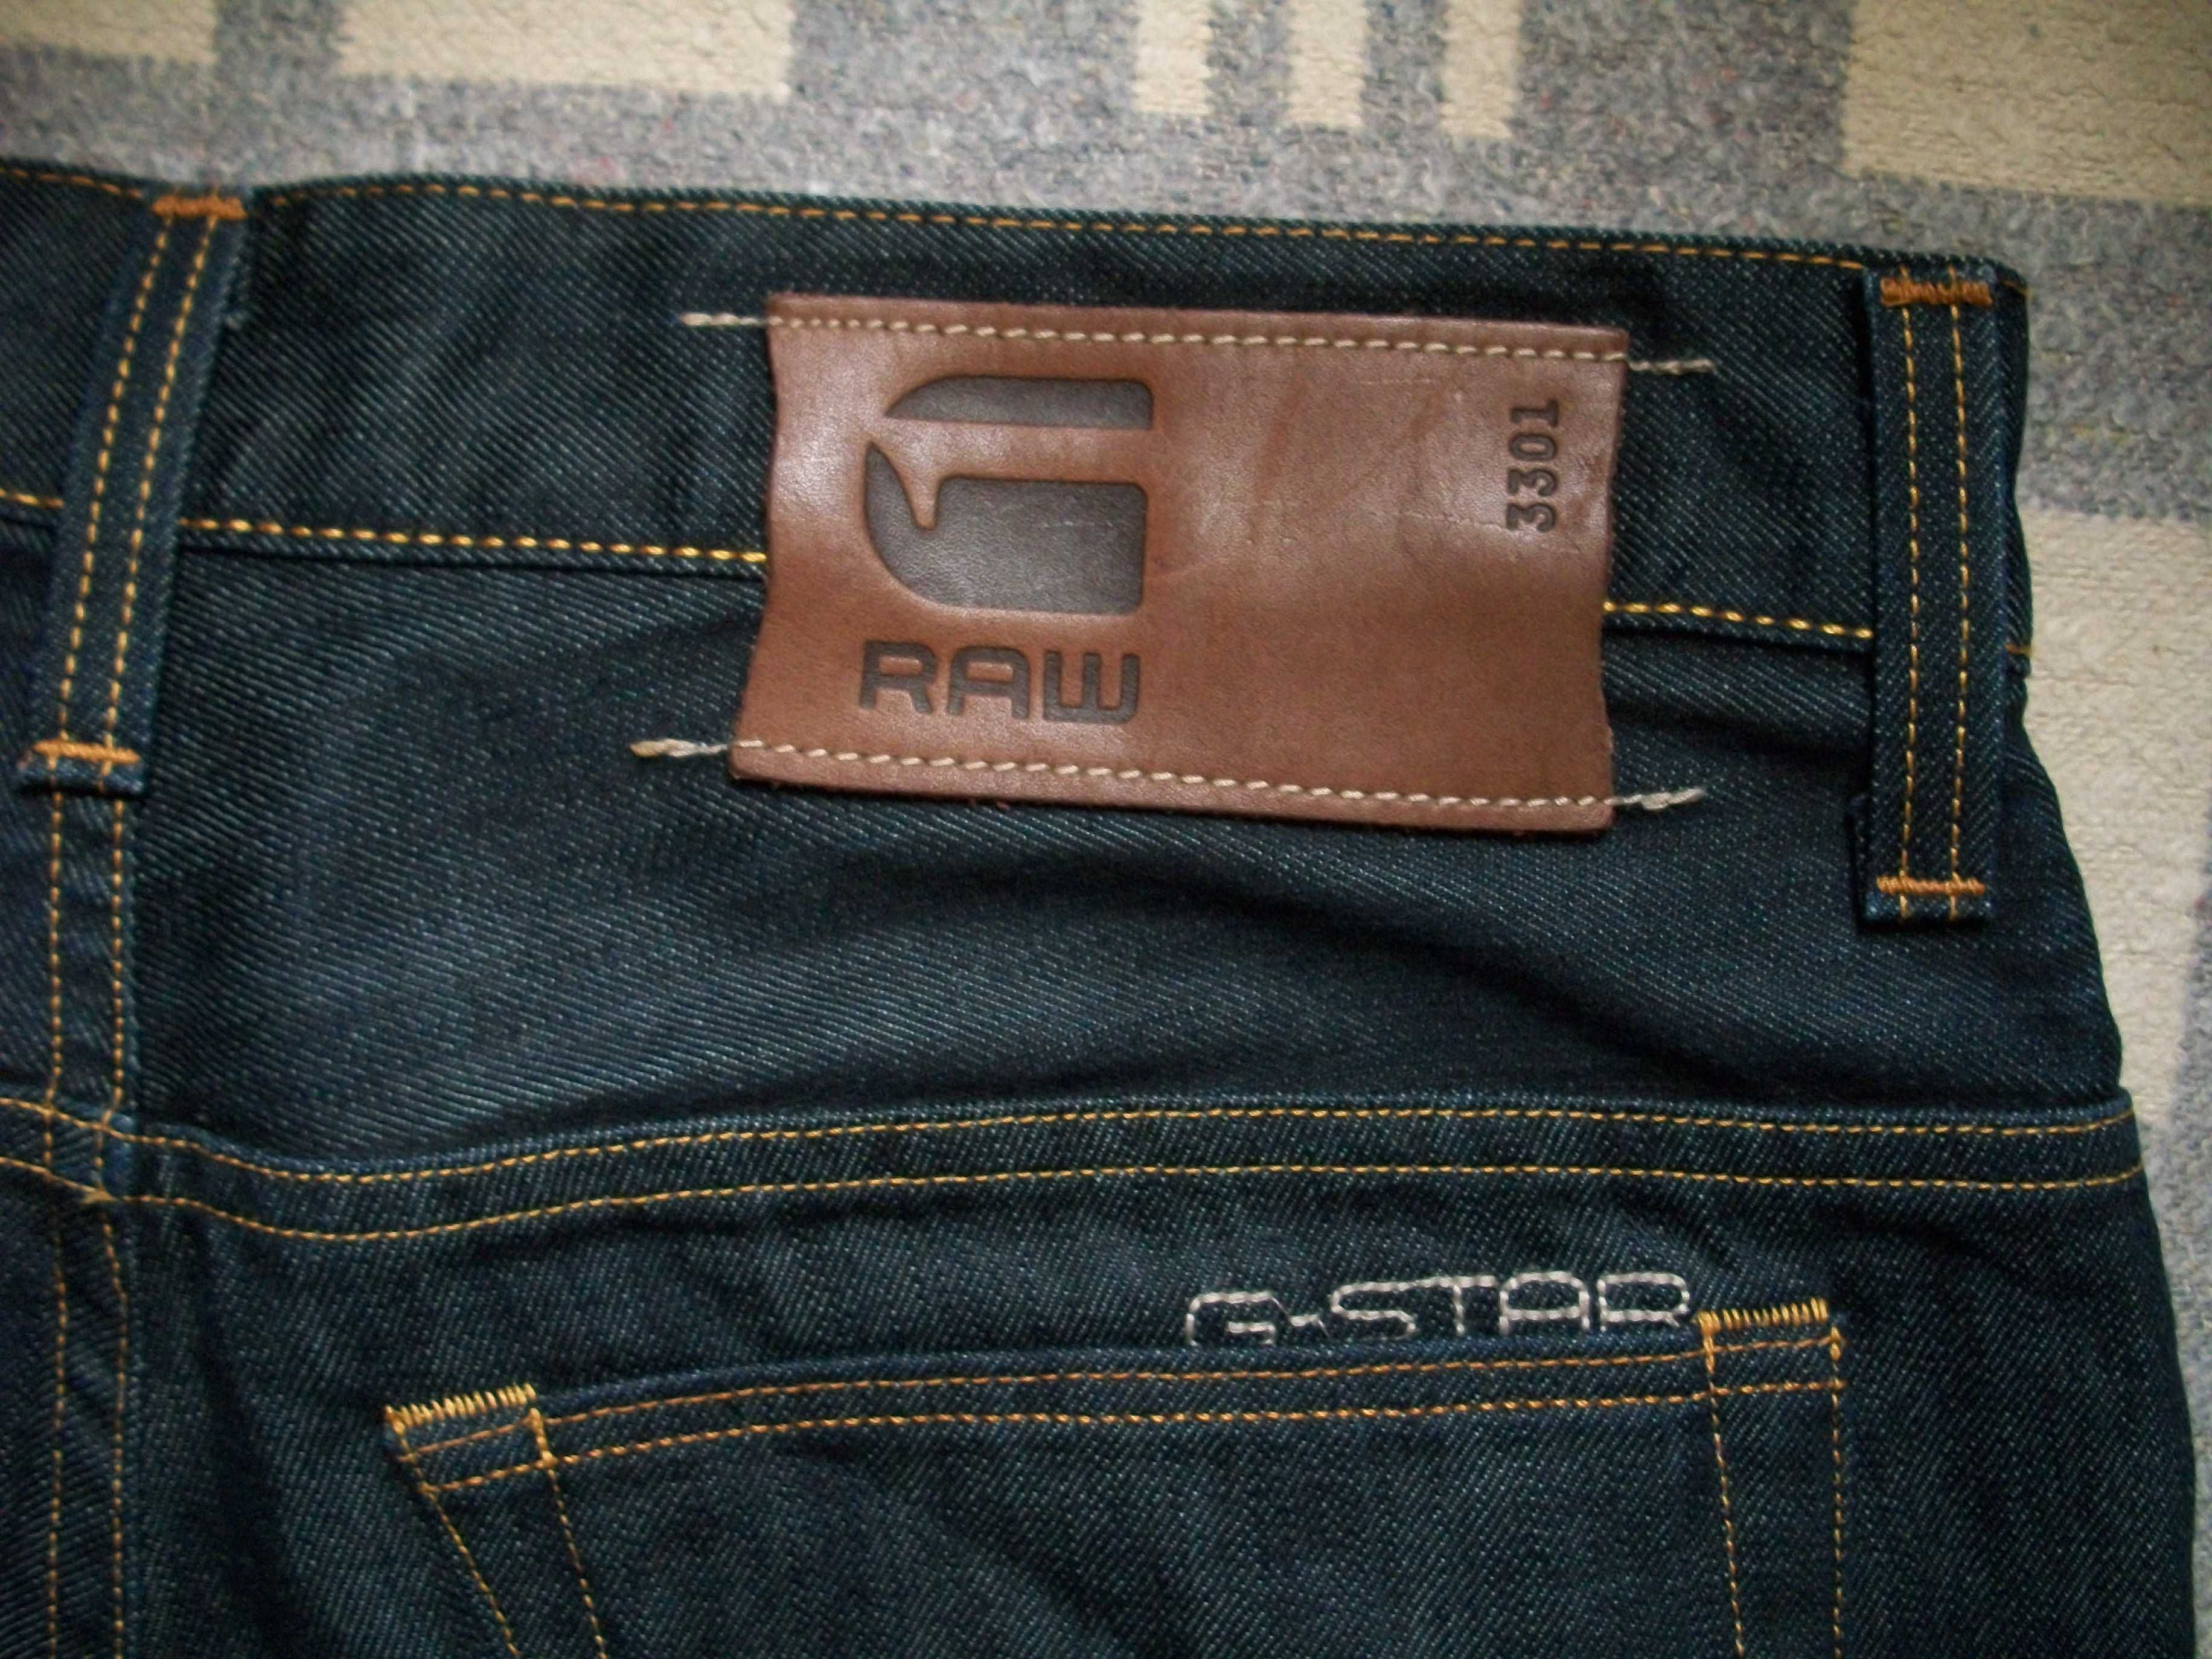 джинсы G-Star  32-32 полуталия 41-41.5 см оригинал Италия